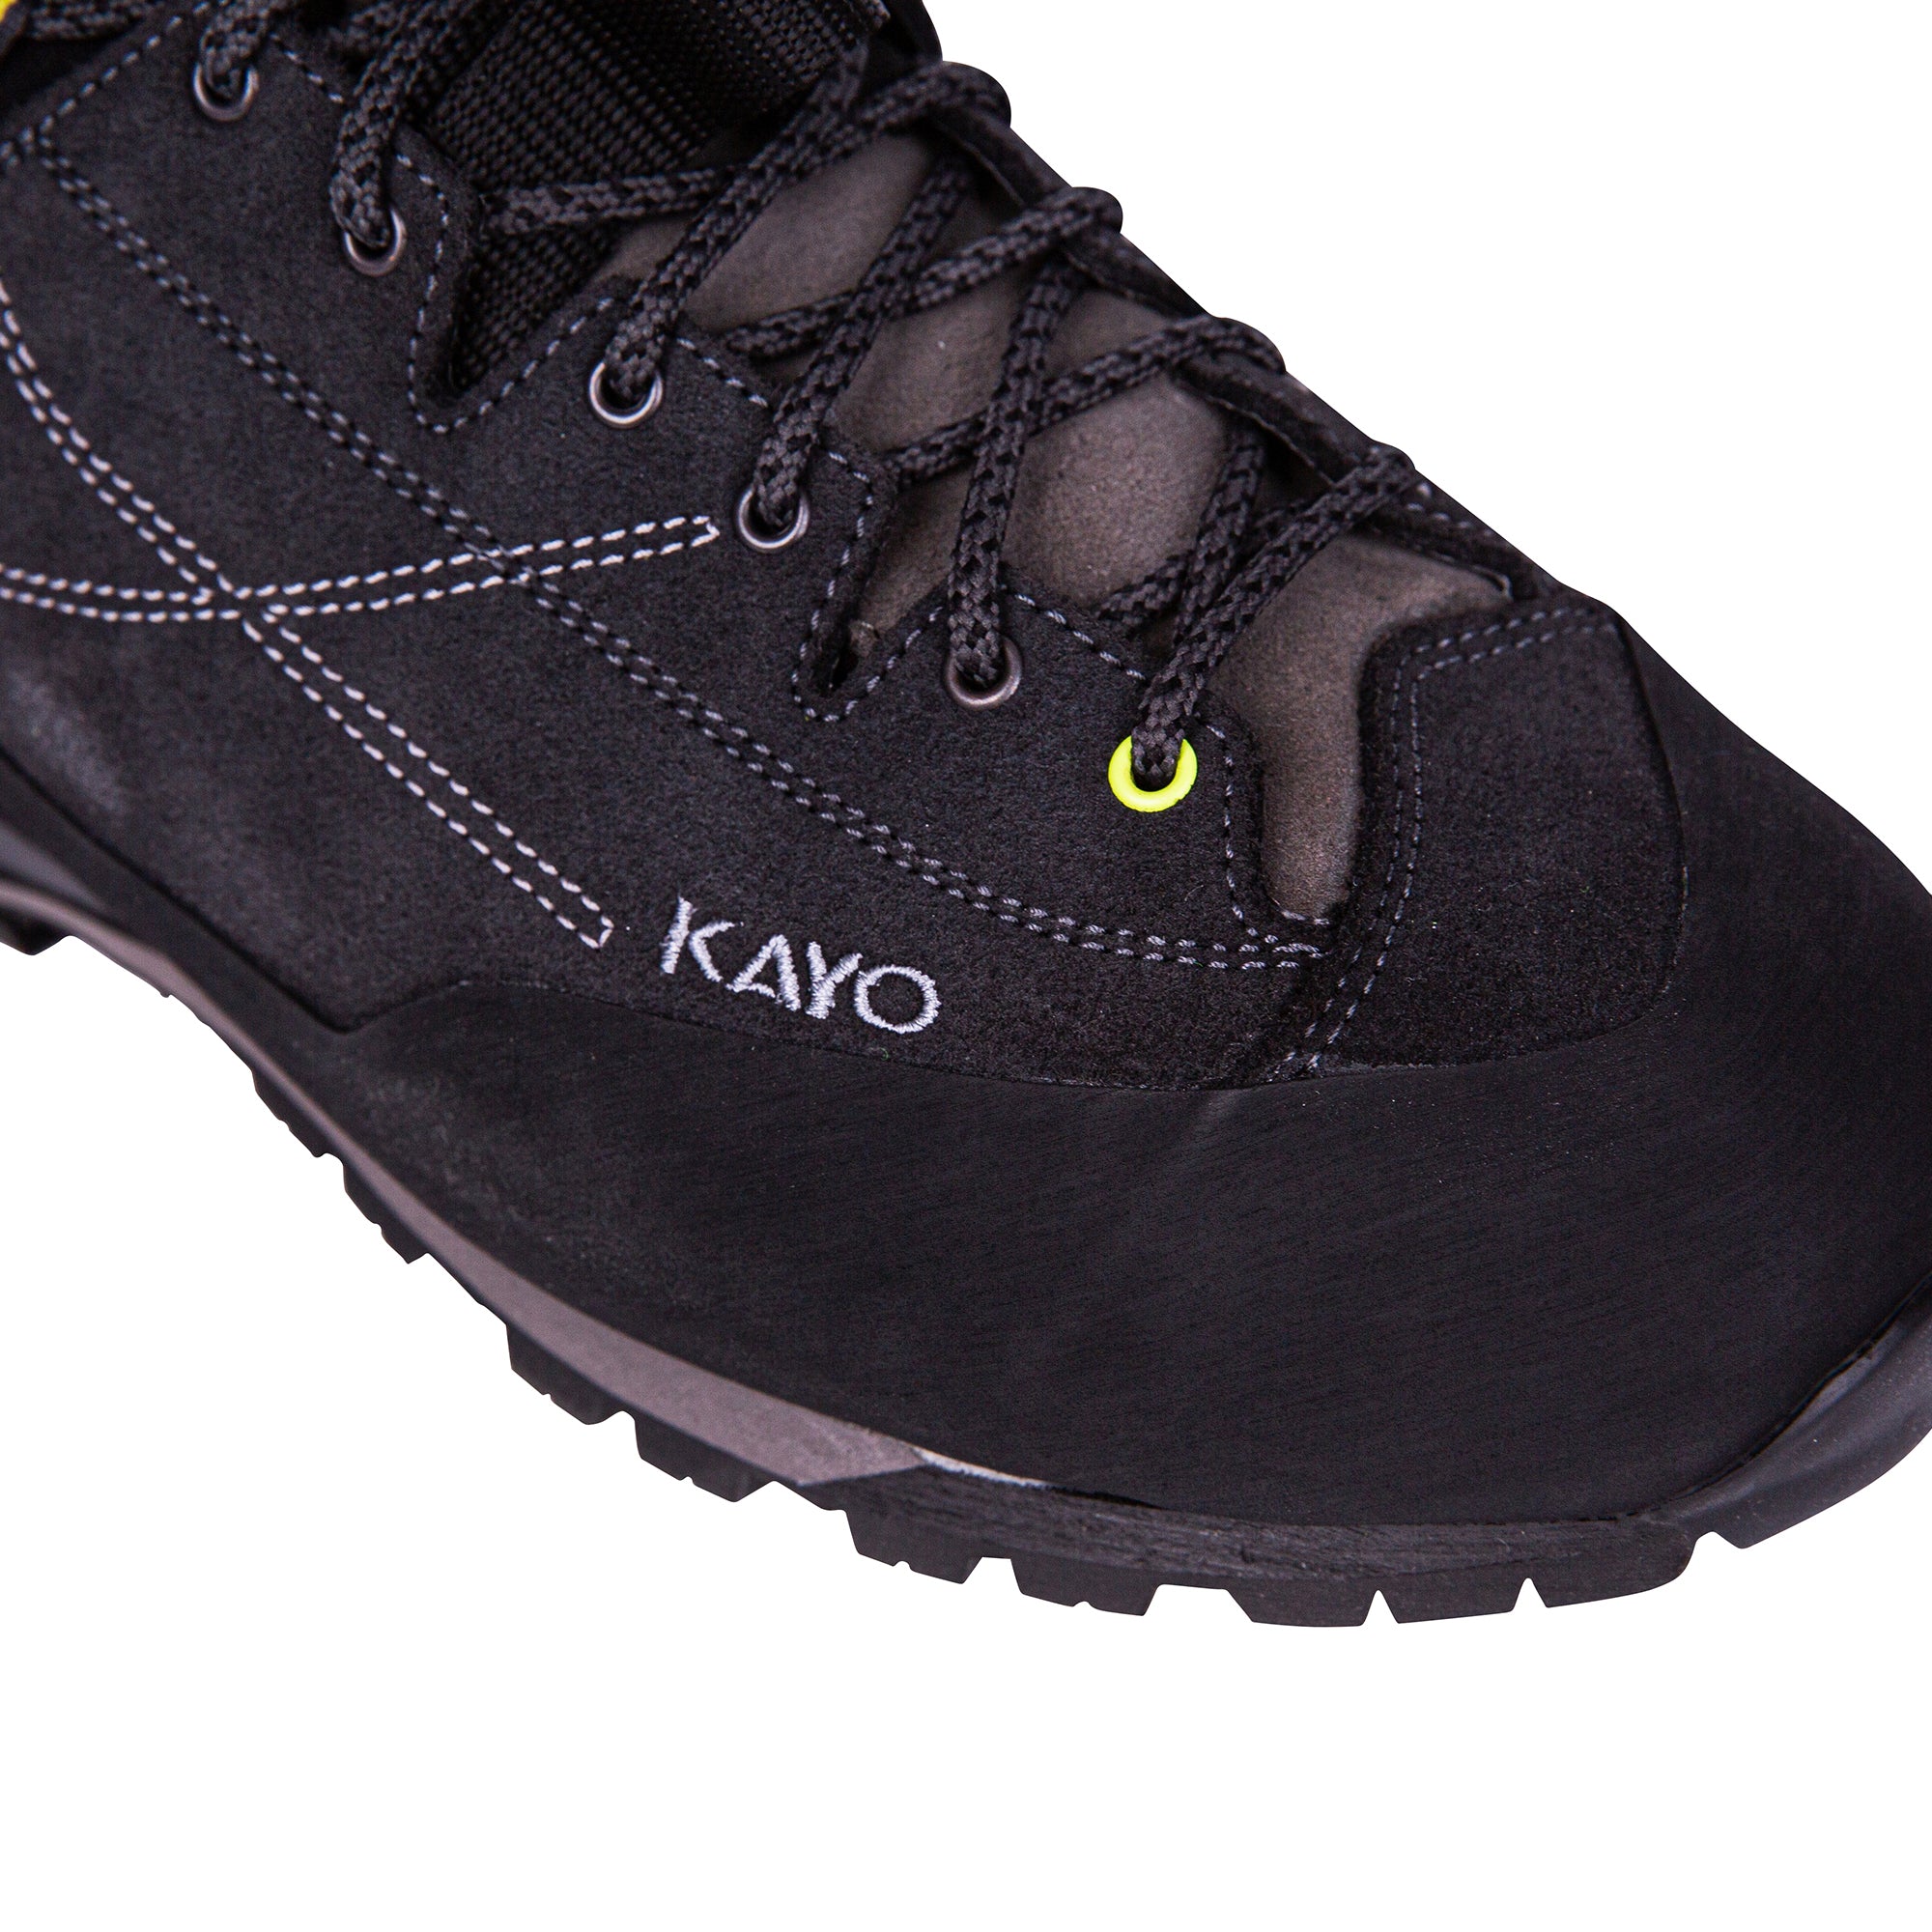 AT34000 Kayo Chainsaw Boot - Black